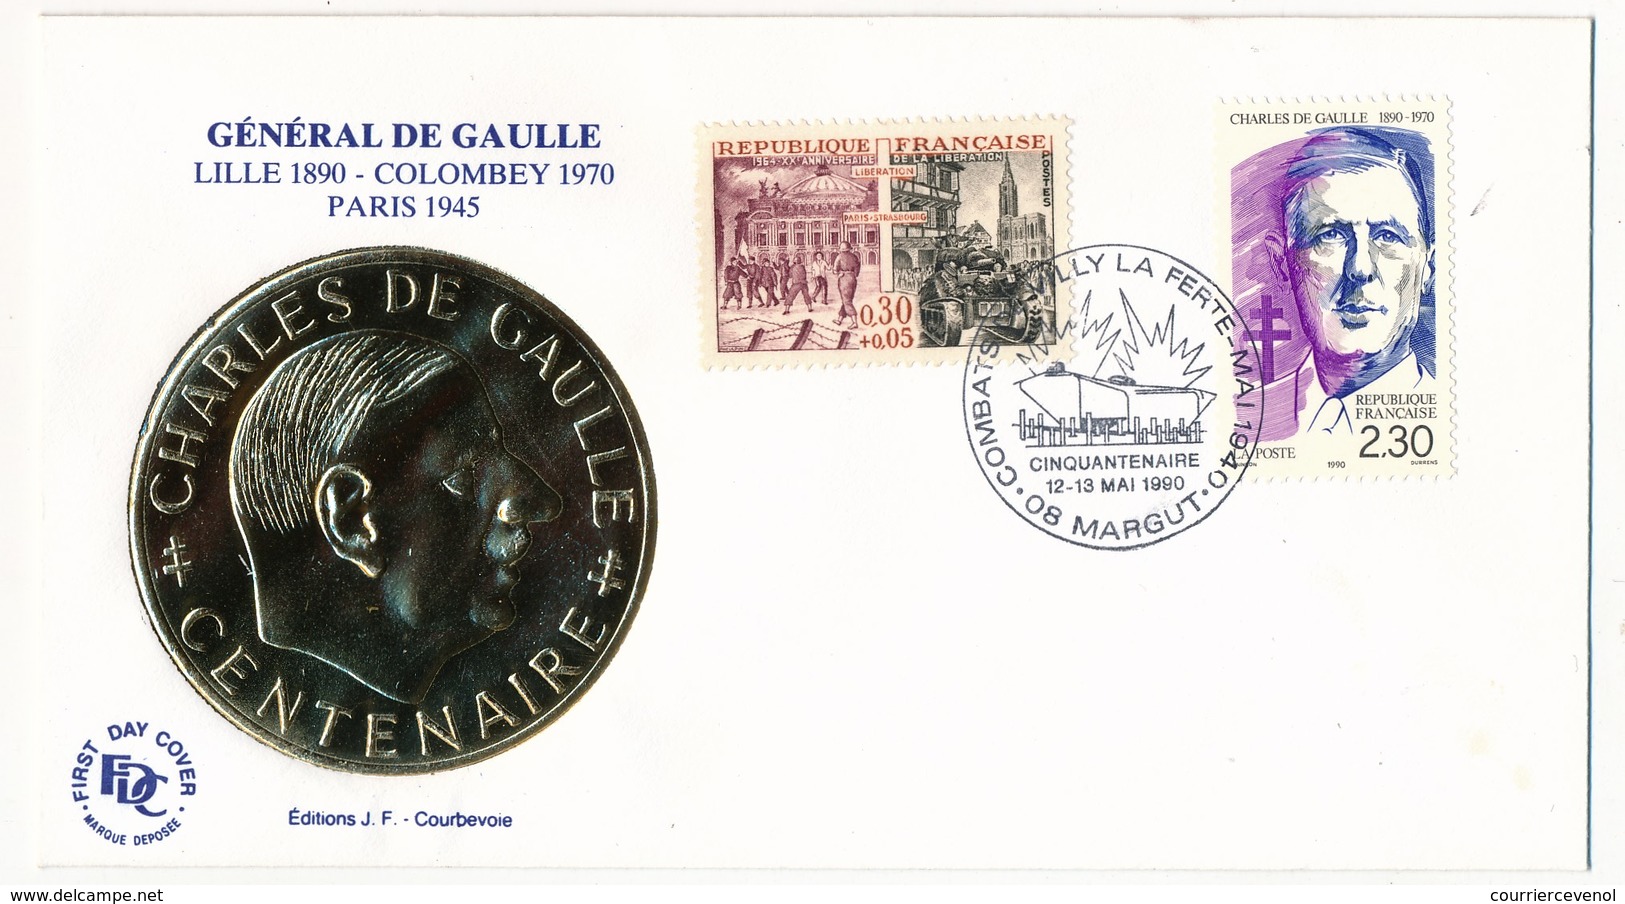 FRANCE - Enveloppe - Cachet Temporaire "Combats De Villy La Ferté - Cinquantenaire" - 08 MARGUT  - 12/13.6.1990 - De Gaulle (Generale)